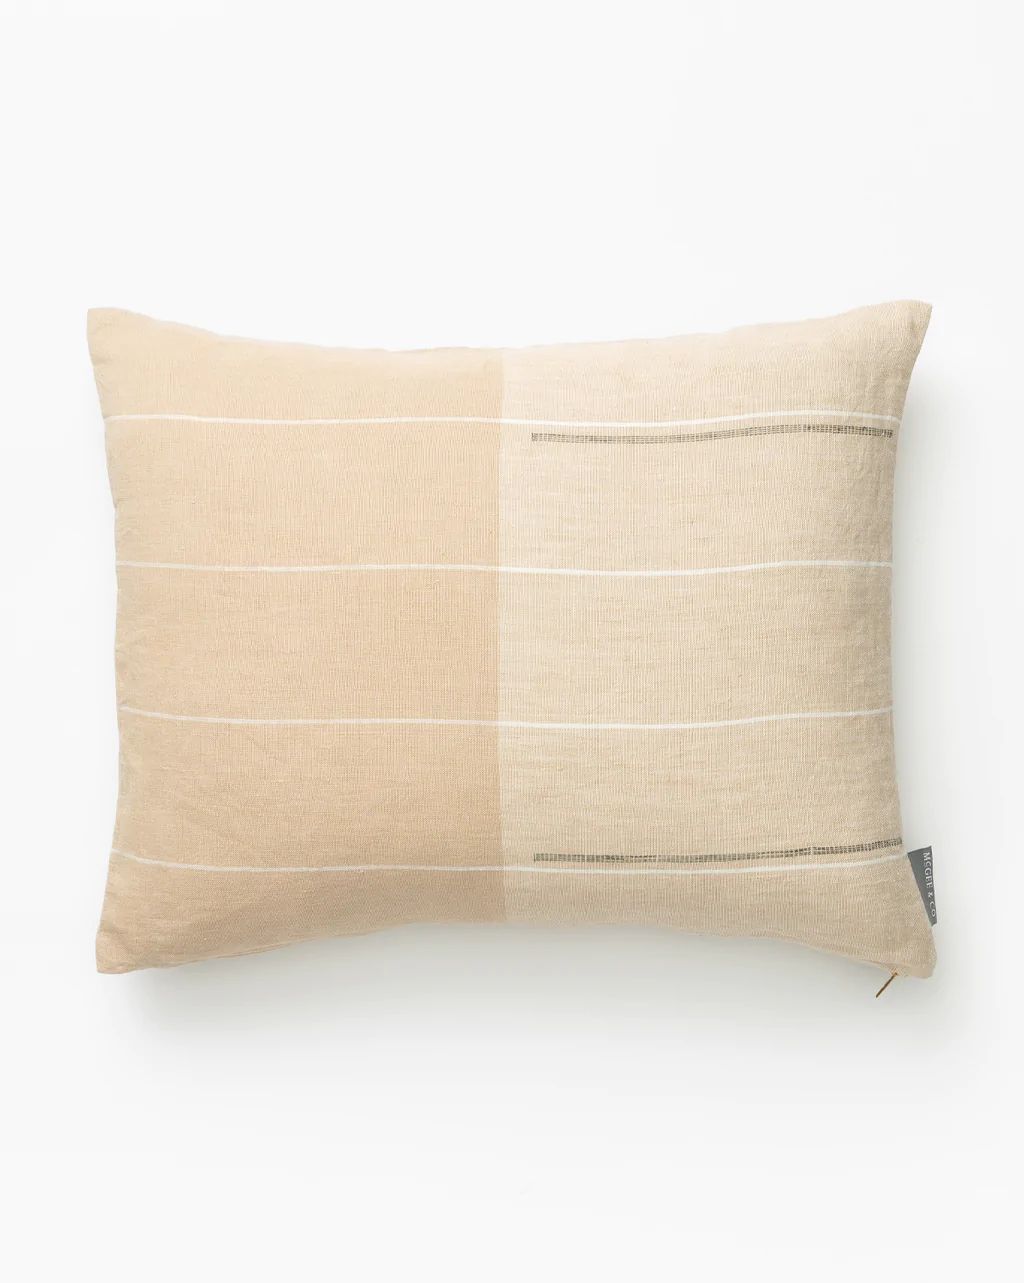 Huron Pillow Cover | McGee & Co.